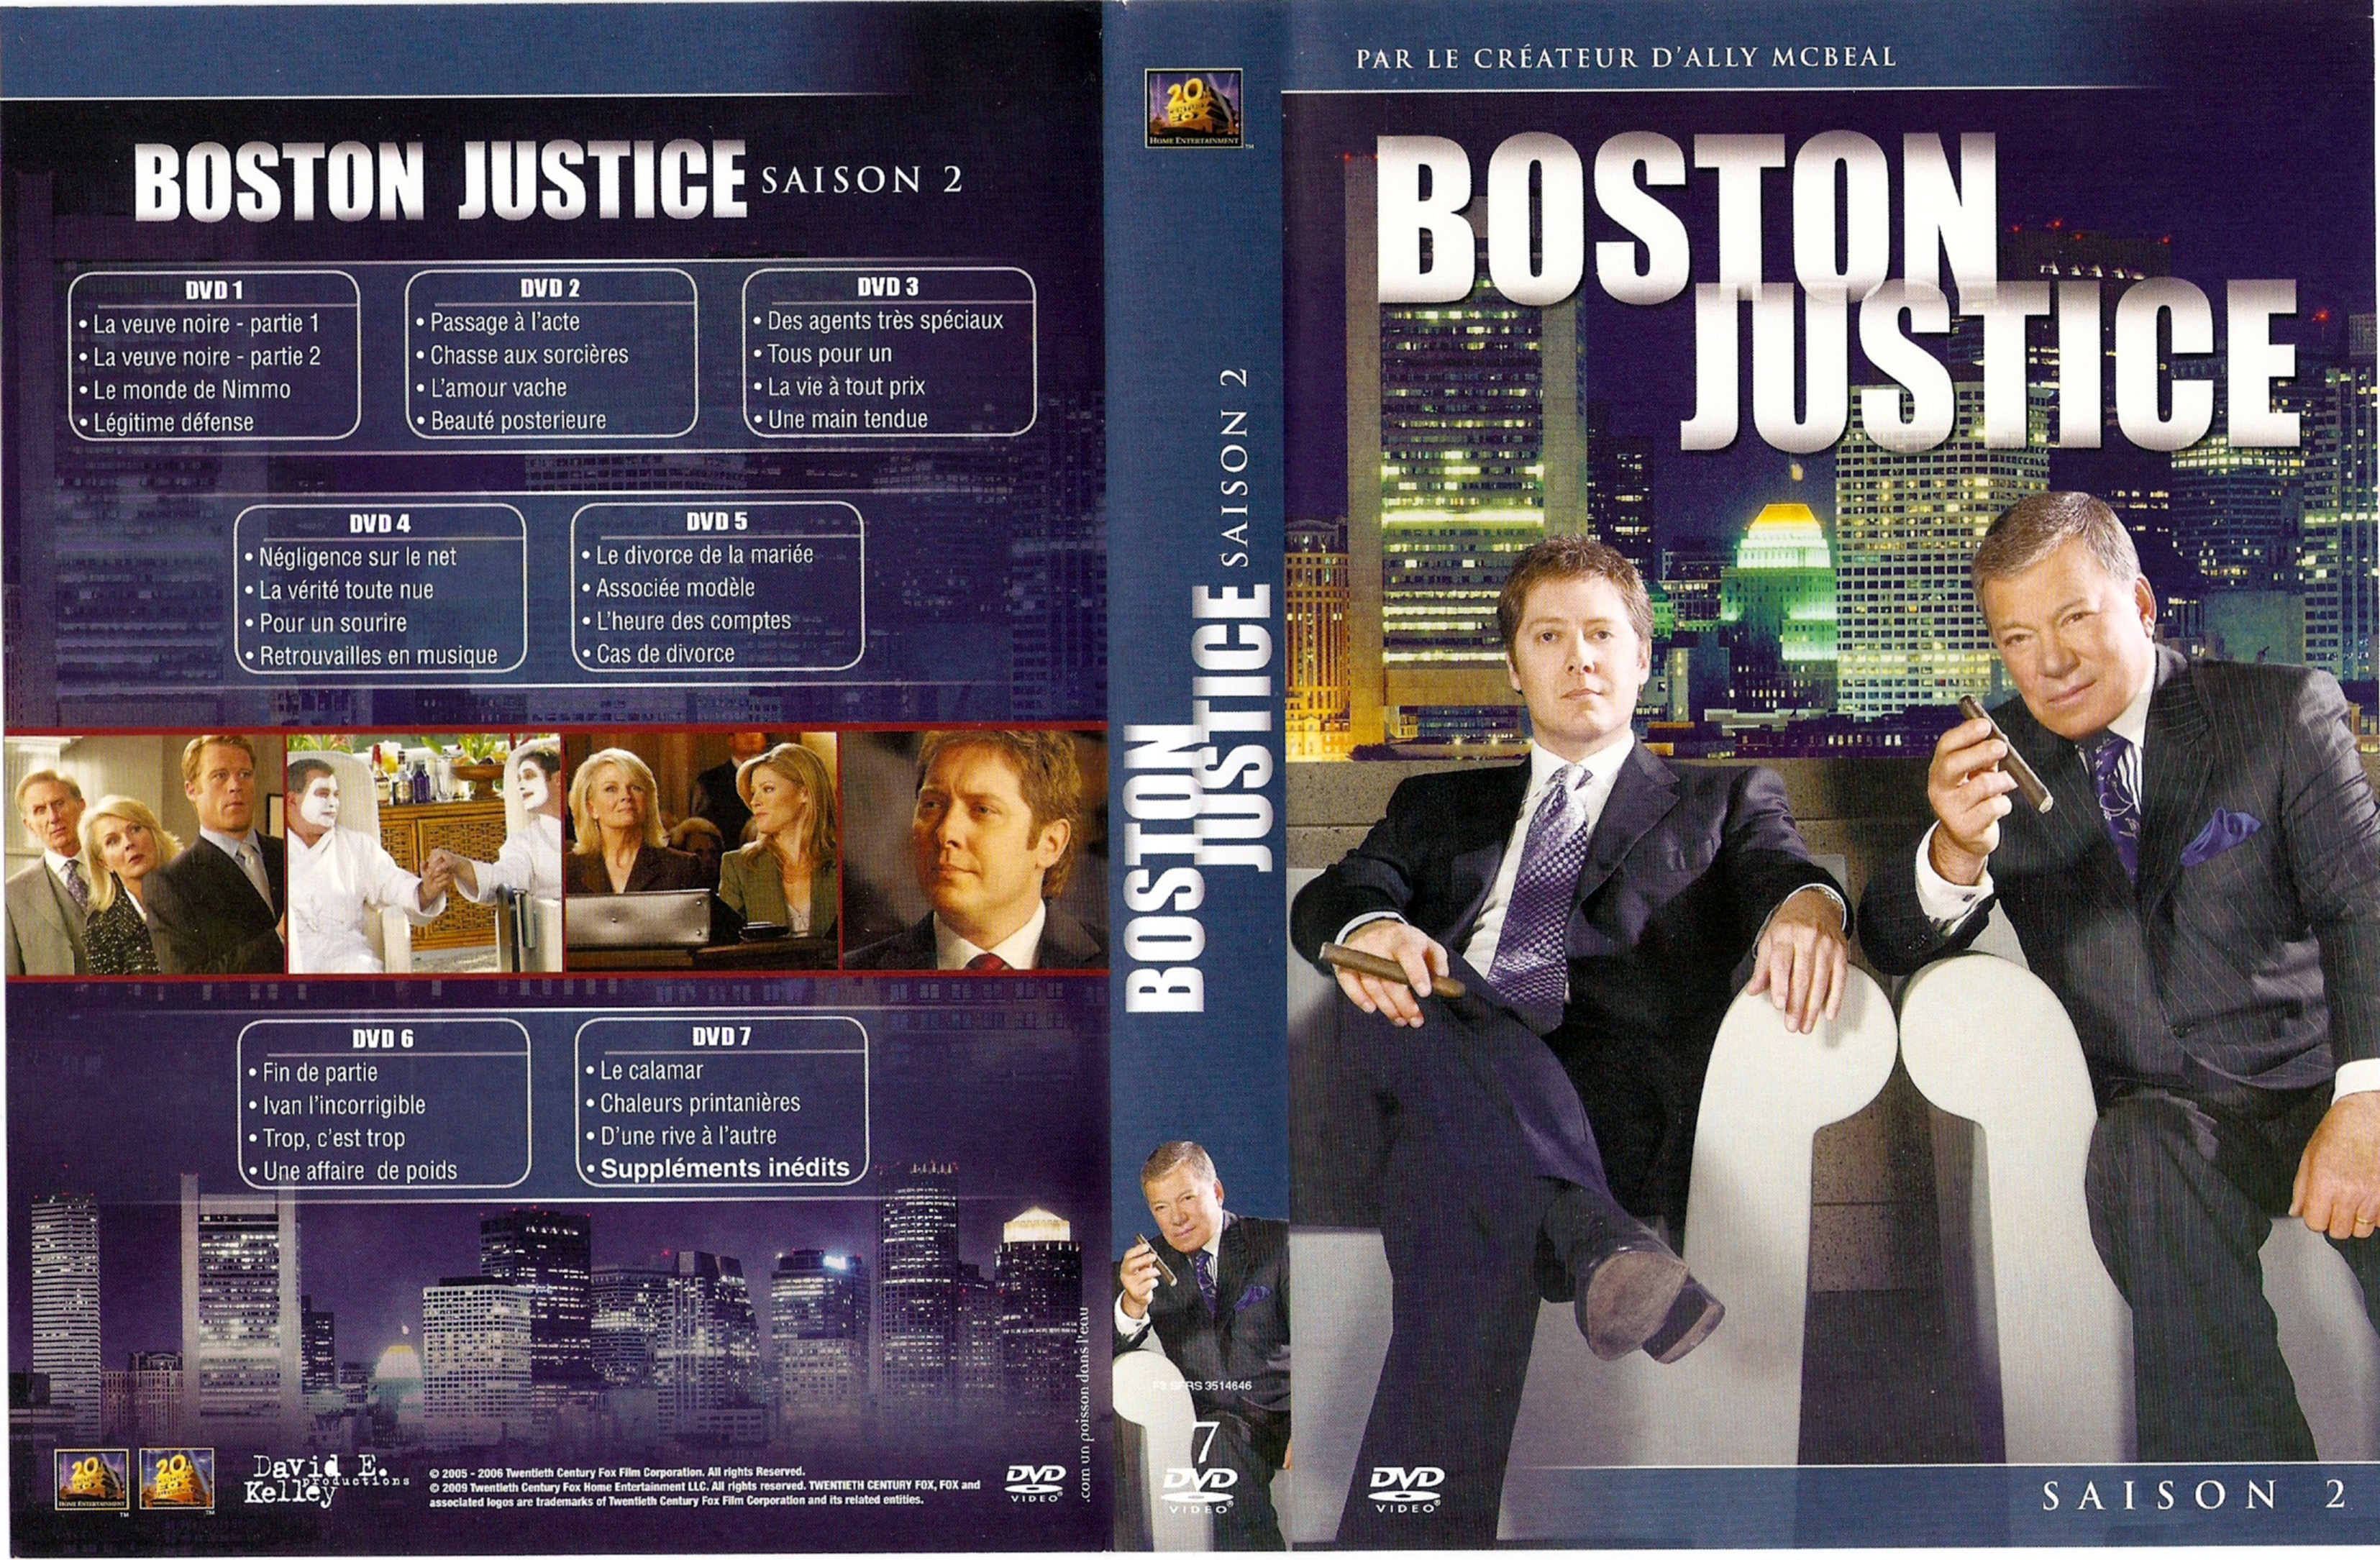 Jaquette DVD Boston justice Saison 2 COFFRET